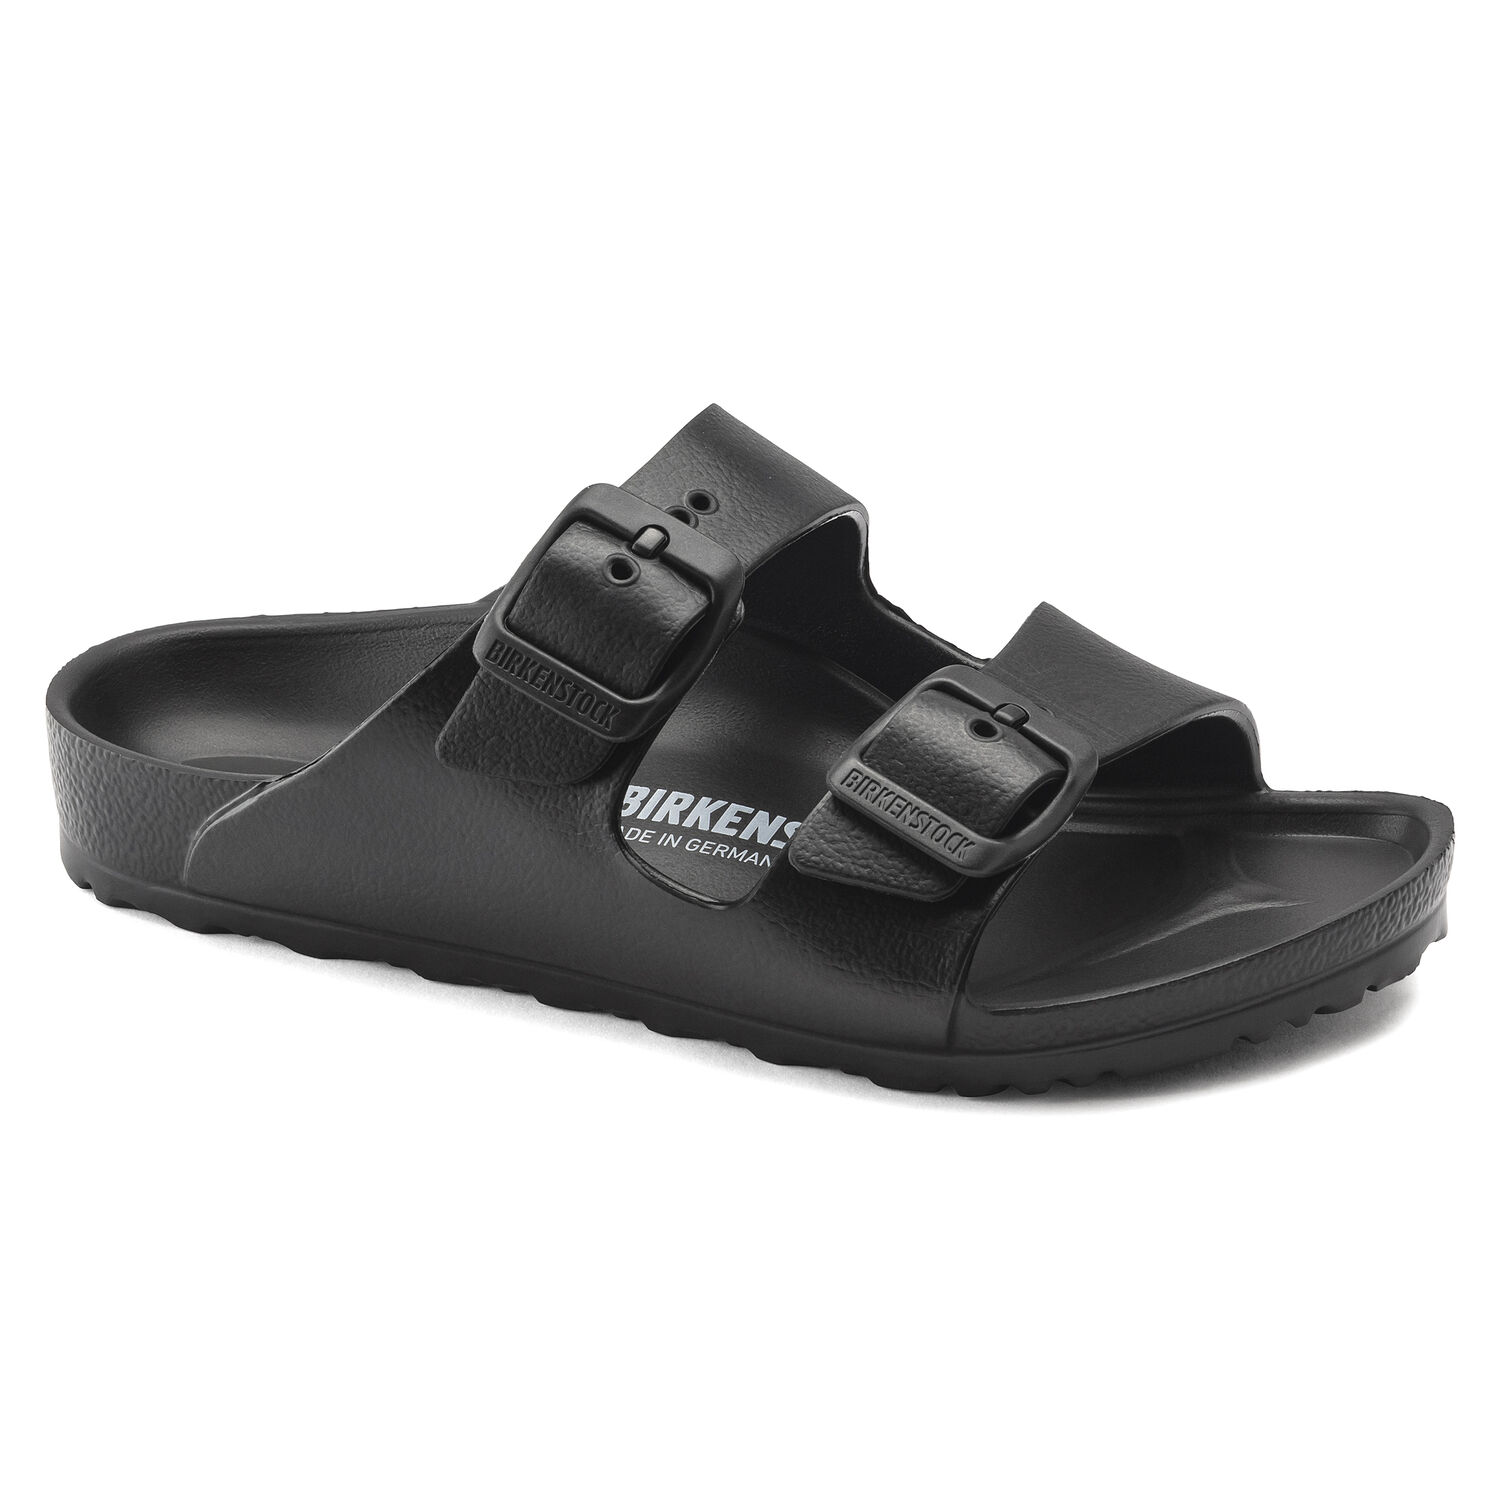 Une paire de sandales Birkenstock Arizona Kids noires avec deux boucles sur un fond blanc. Les sandales ont une assise anatomique en liège et une semelle extérieure en EVA souple. Les sangles sont fabriquées en cuir synthétique Birko-Flor, qui est doux et résistant à l'eau.